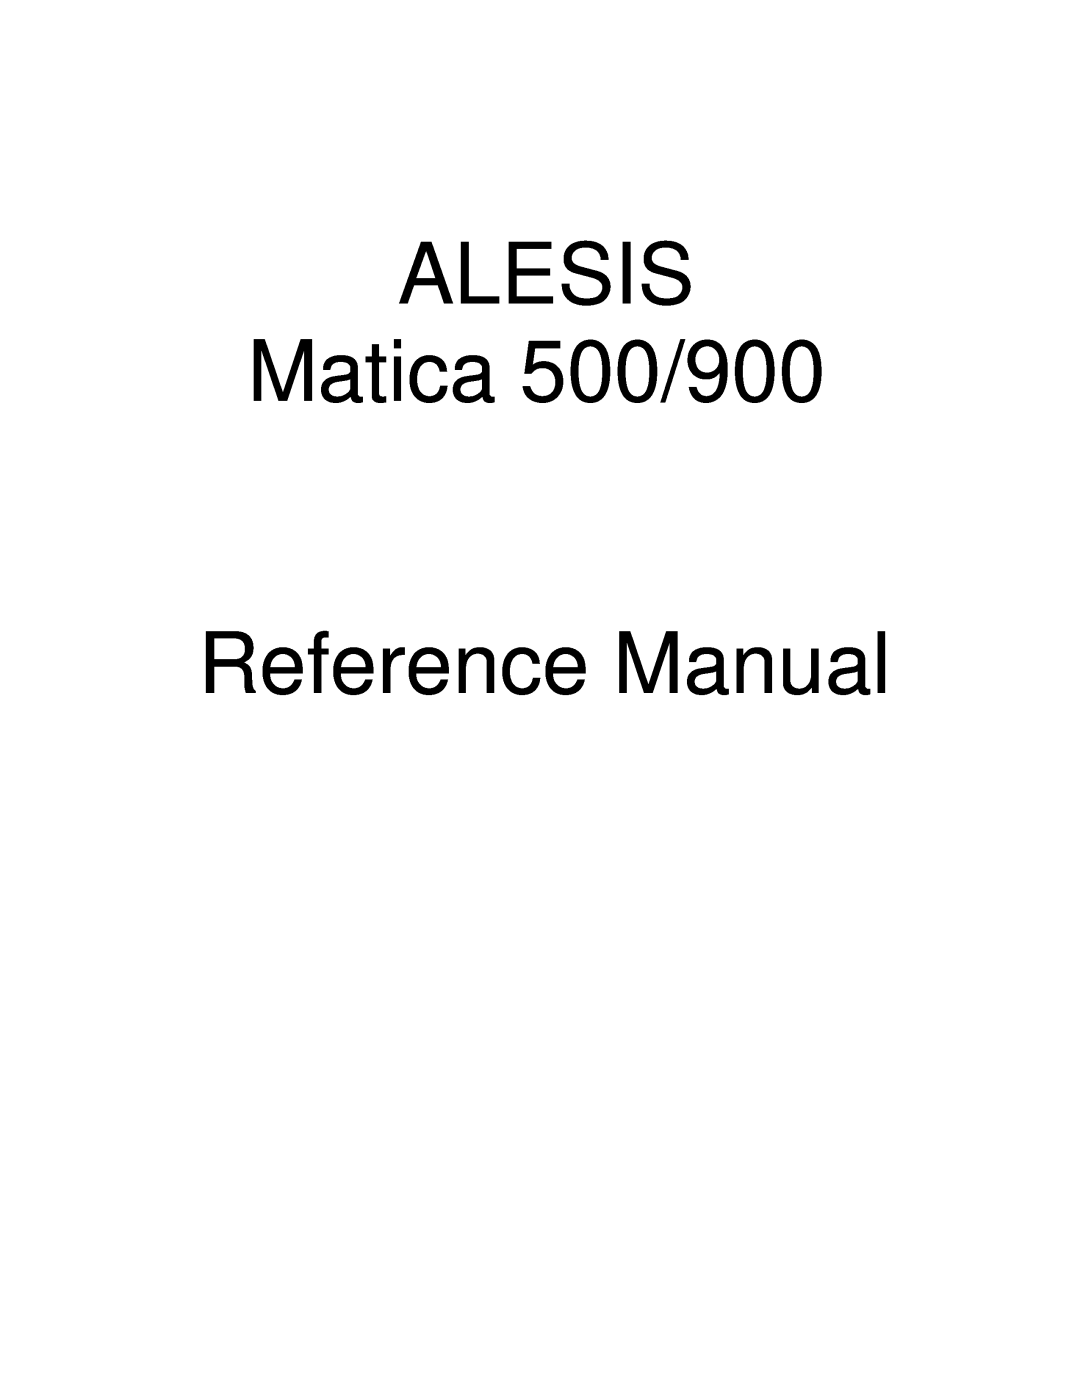 Alesis Matica 900 manual ALESIS Matica 500/900 Reference Manual 